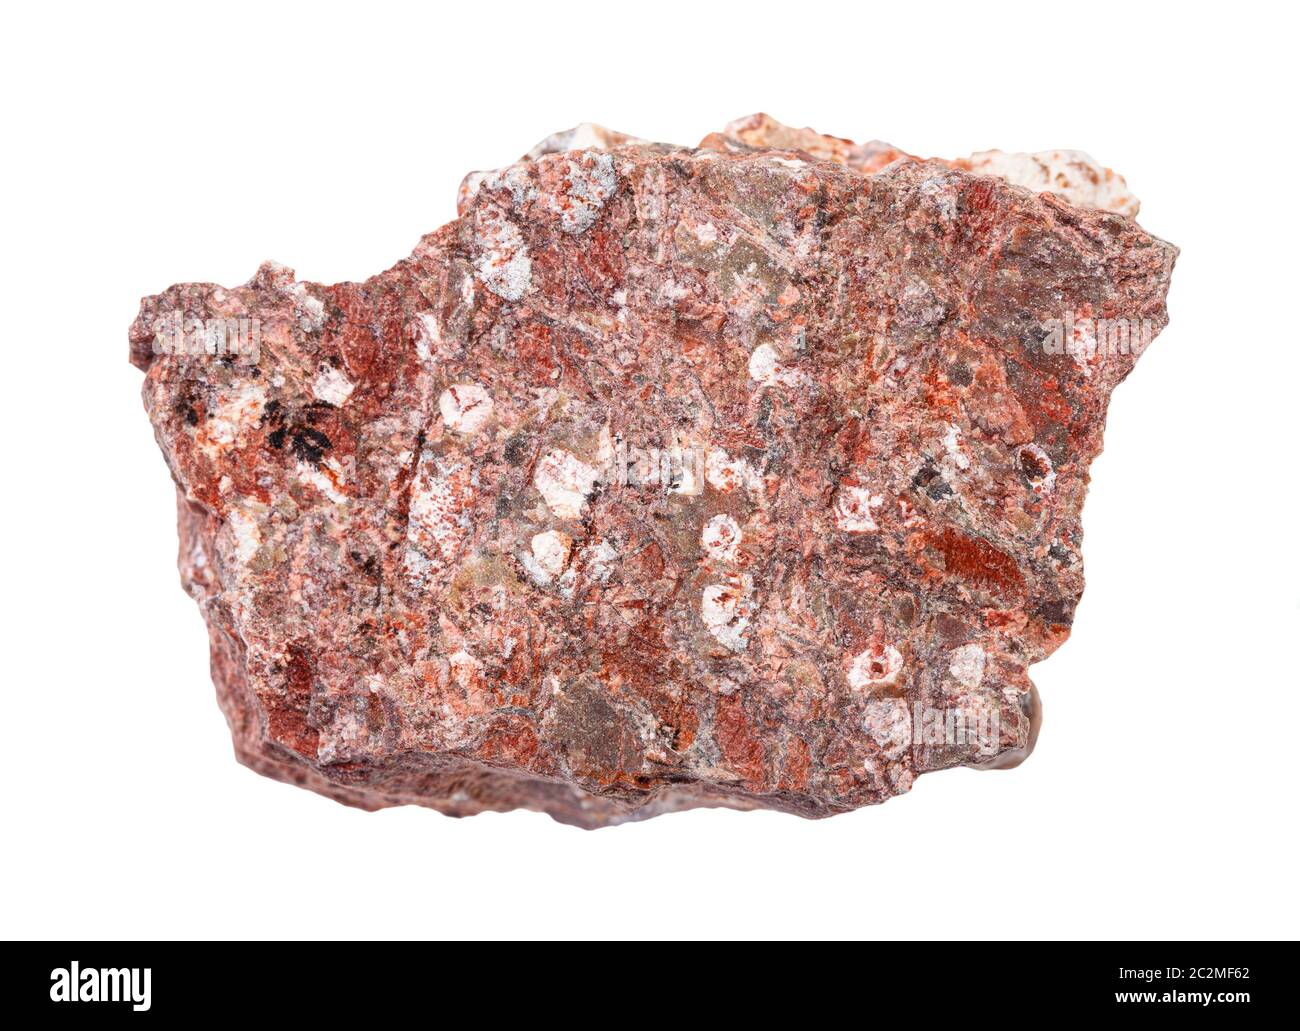 Nahaufnahme der natürlichen Mineralprobe aus der geologischen Sammlung - roher Rhyolitgestein isoliert auf weißem Grund Stockfoto